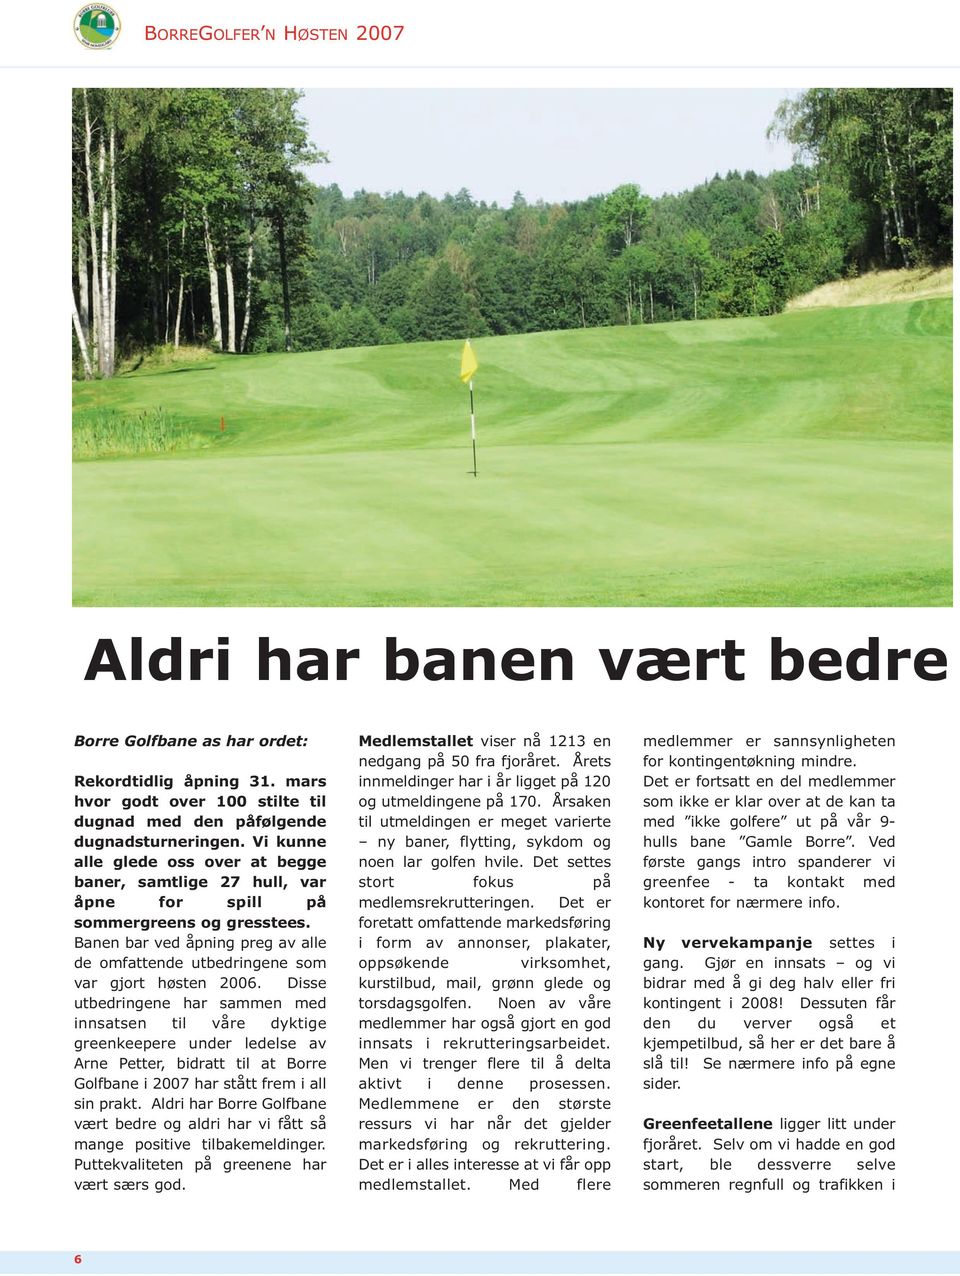 Disse utbedringene har sammen med innsatsen til våre dyktige greenkeepere under ledelse av Arne Petter, bidratt til at Borre Golfbane i 2007 har stått frem i all sin prakt.